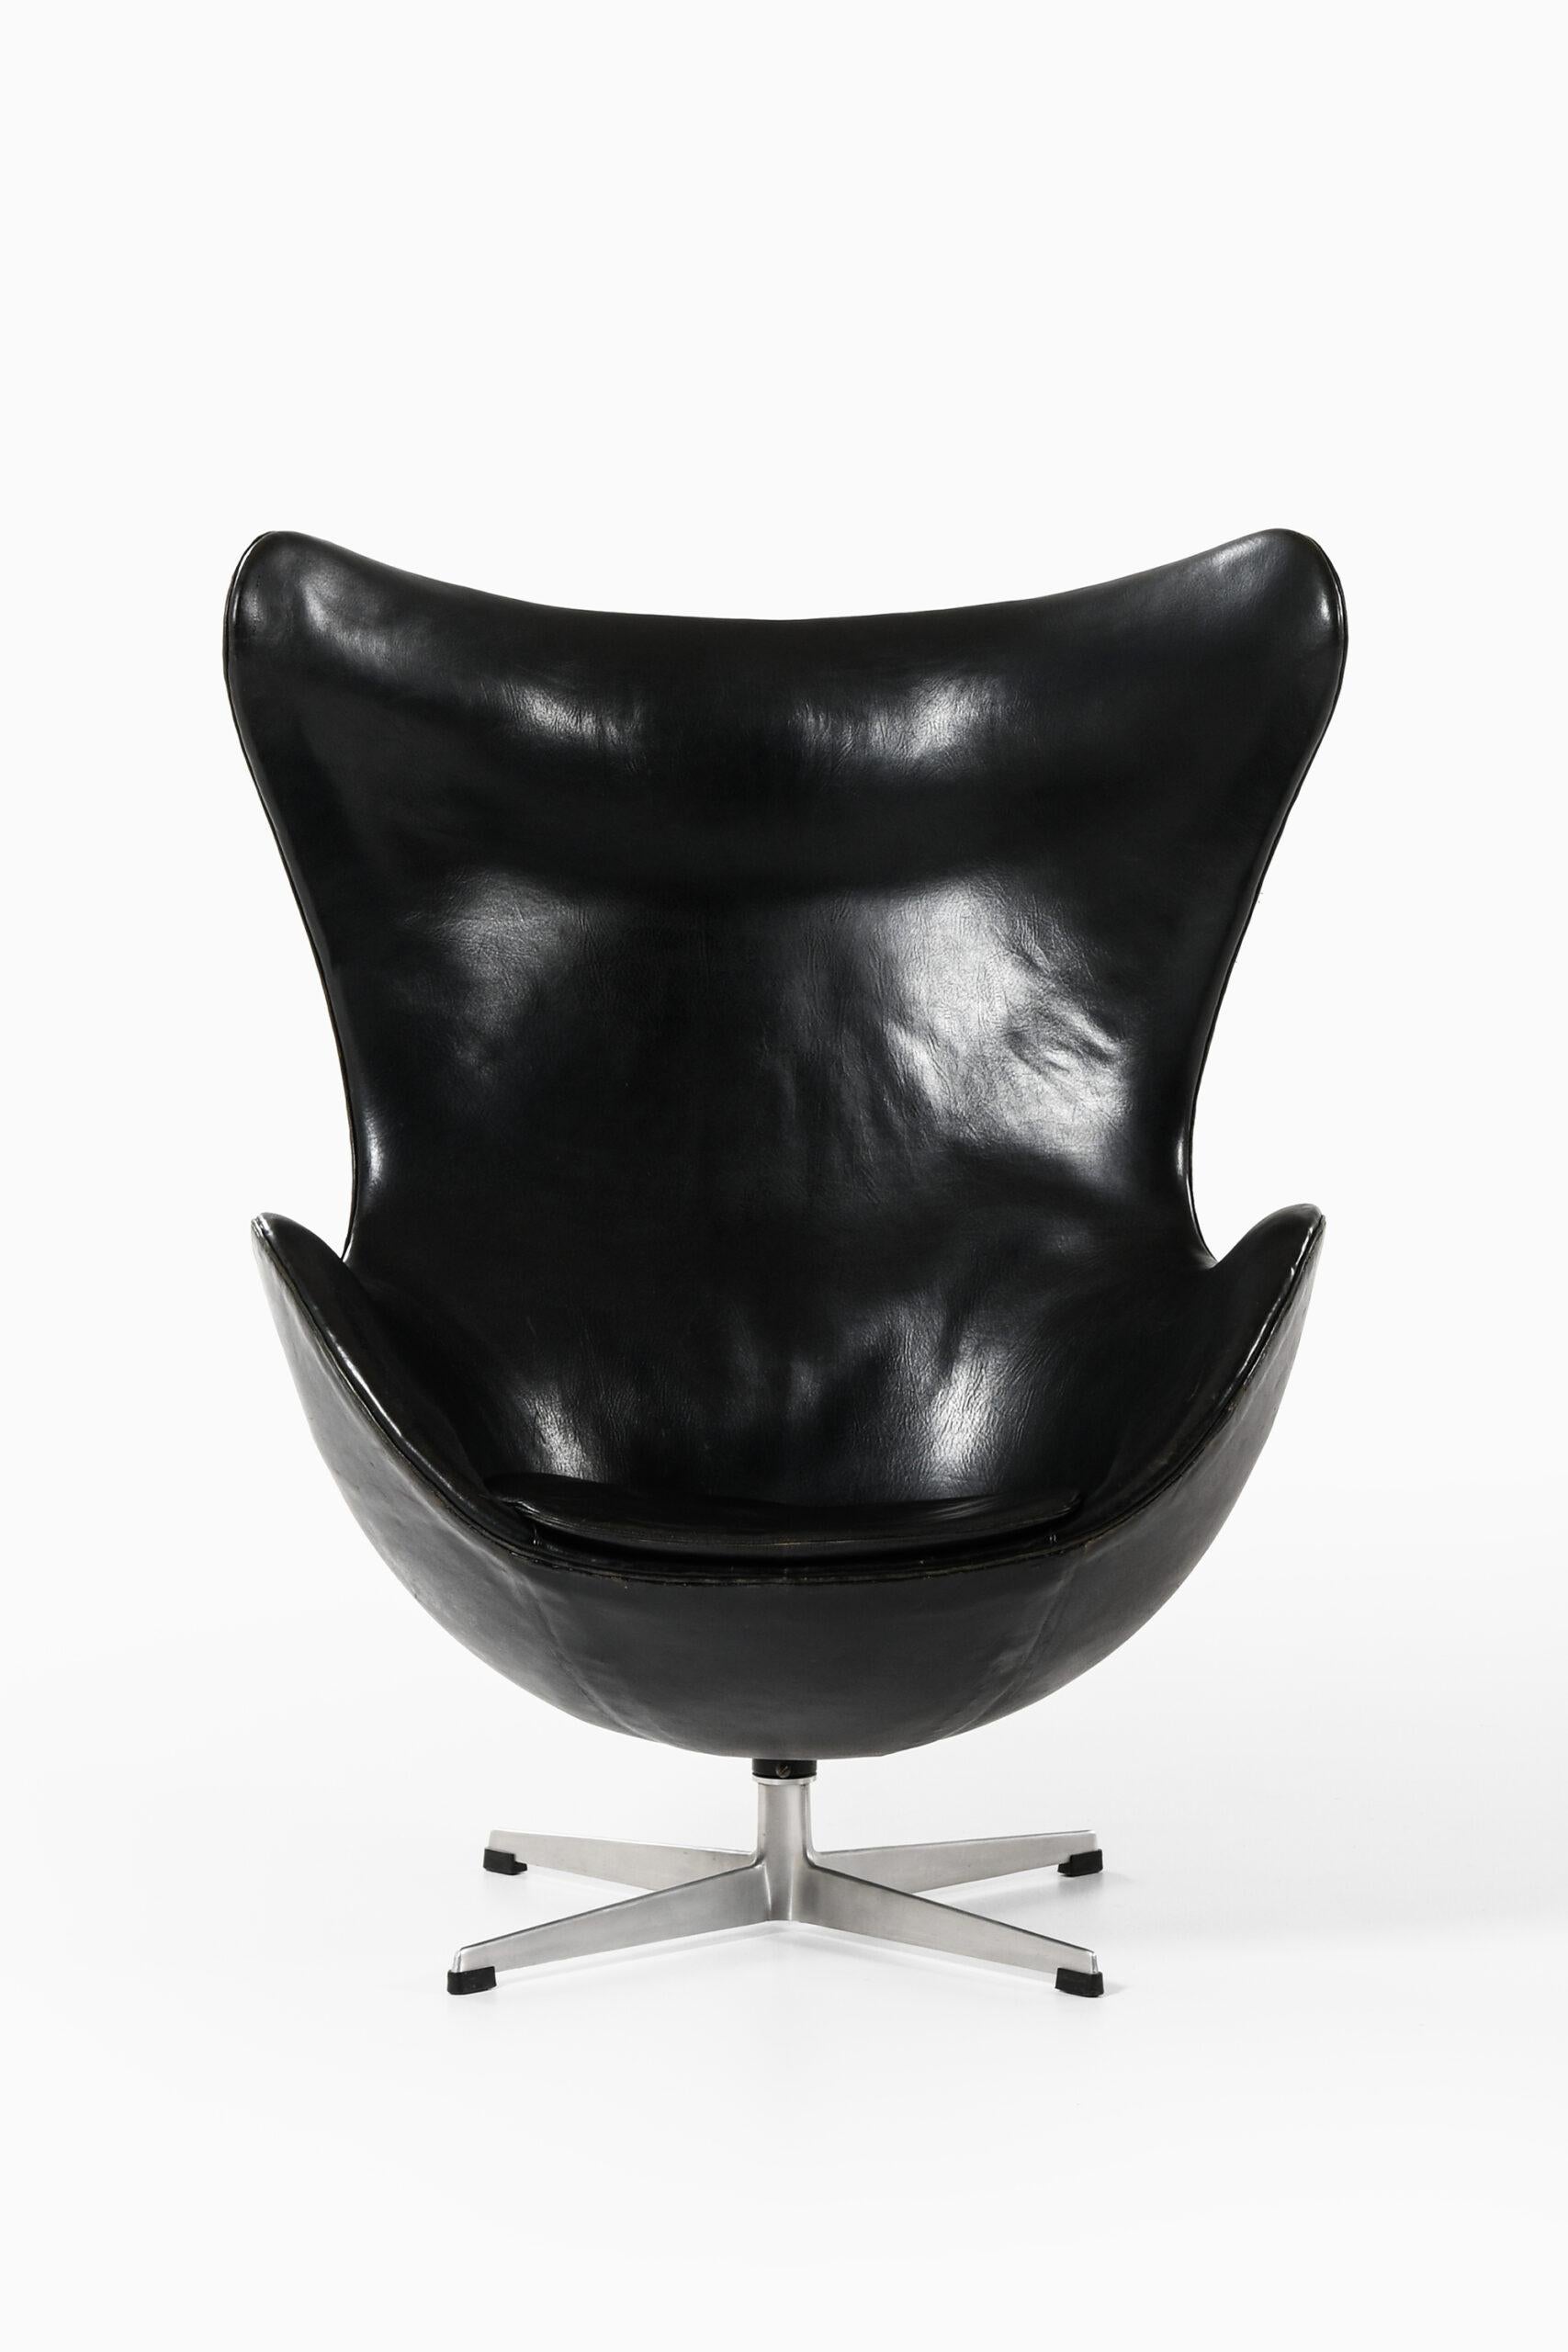 Raro sillón modelo 3316 / Egg diseñado por Arne Jacobsen. Producido por Fritz Hansen en Dinamarca.